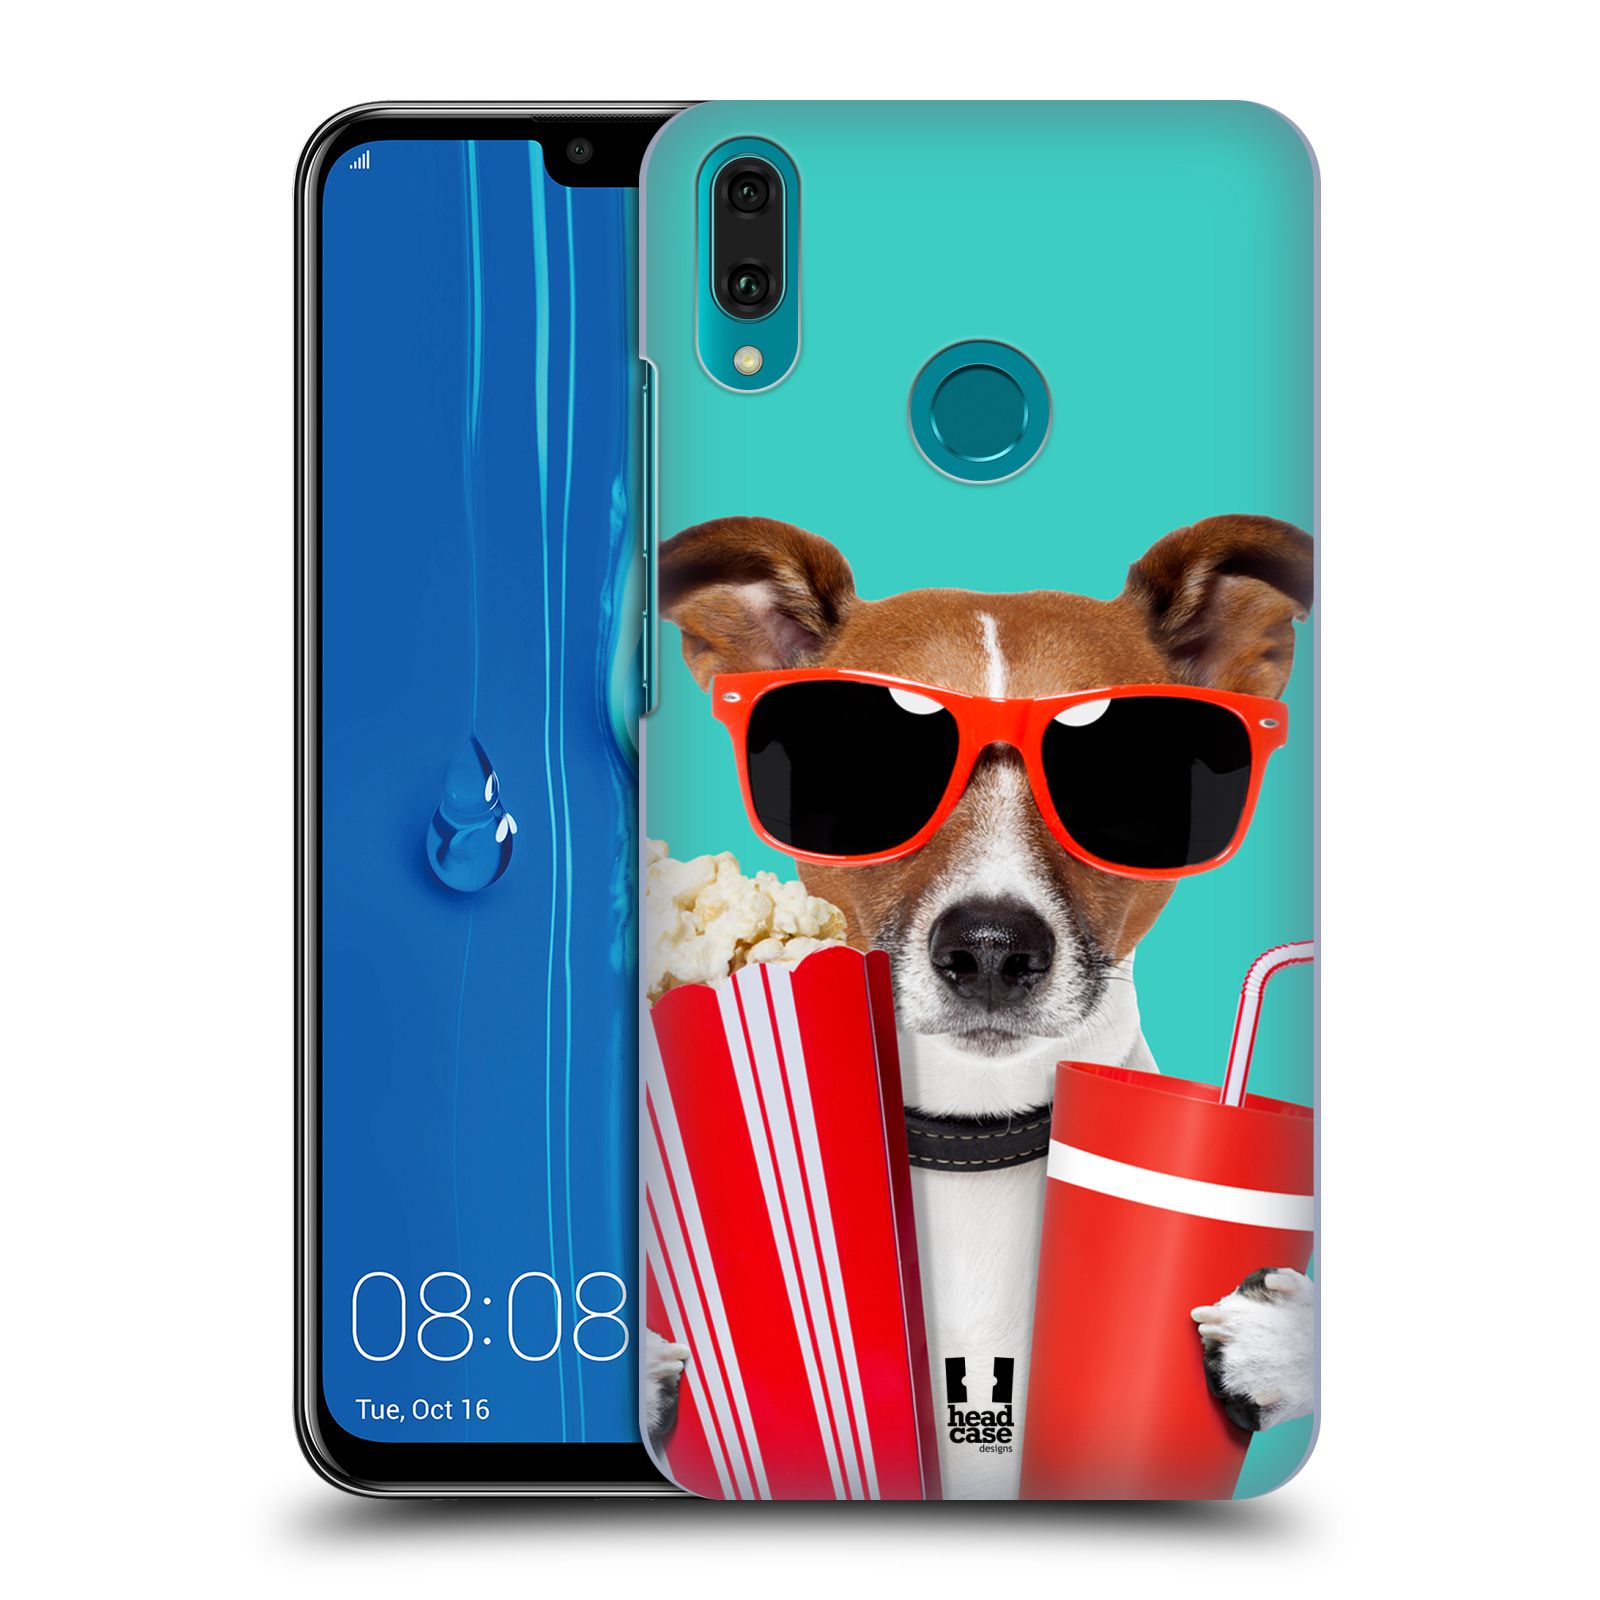 Pouzdro na mobil Huawei Y9 2019 - HEAD CASE - vzor Legrační zvířátka pejsek v kině s popkornem